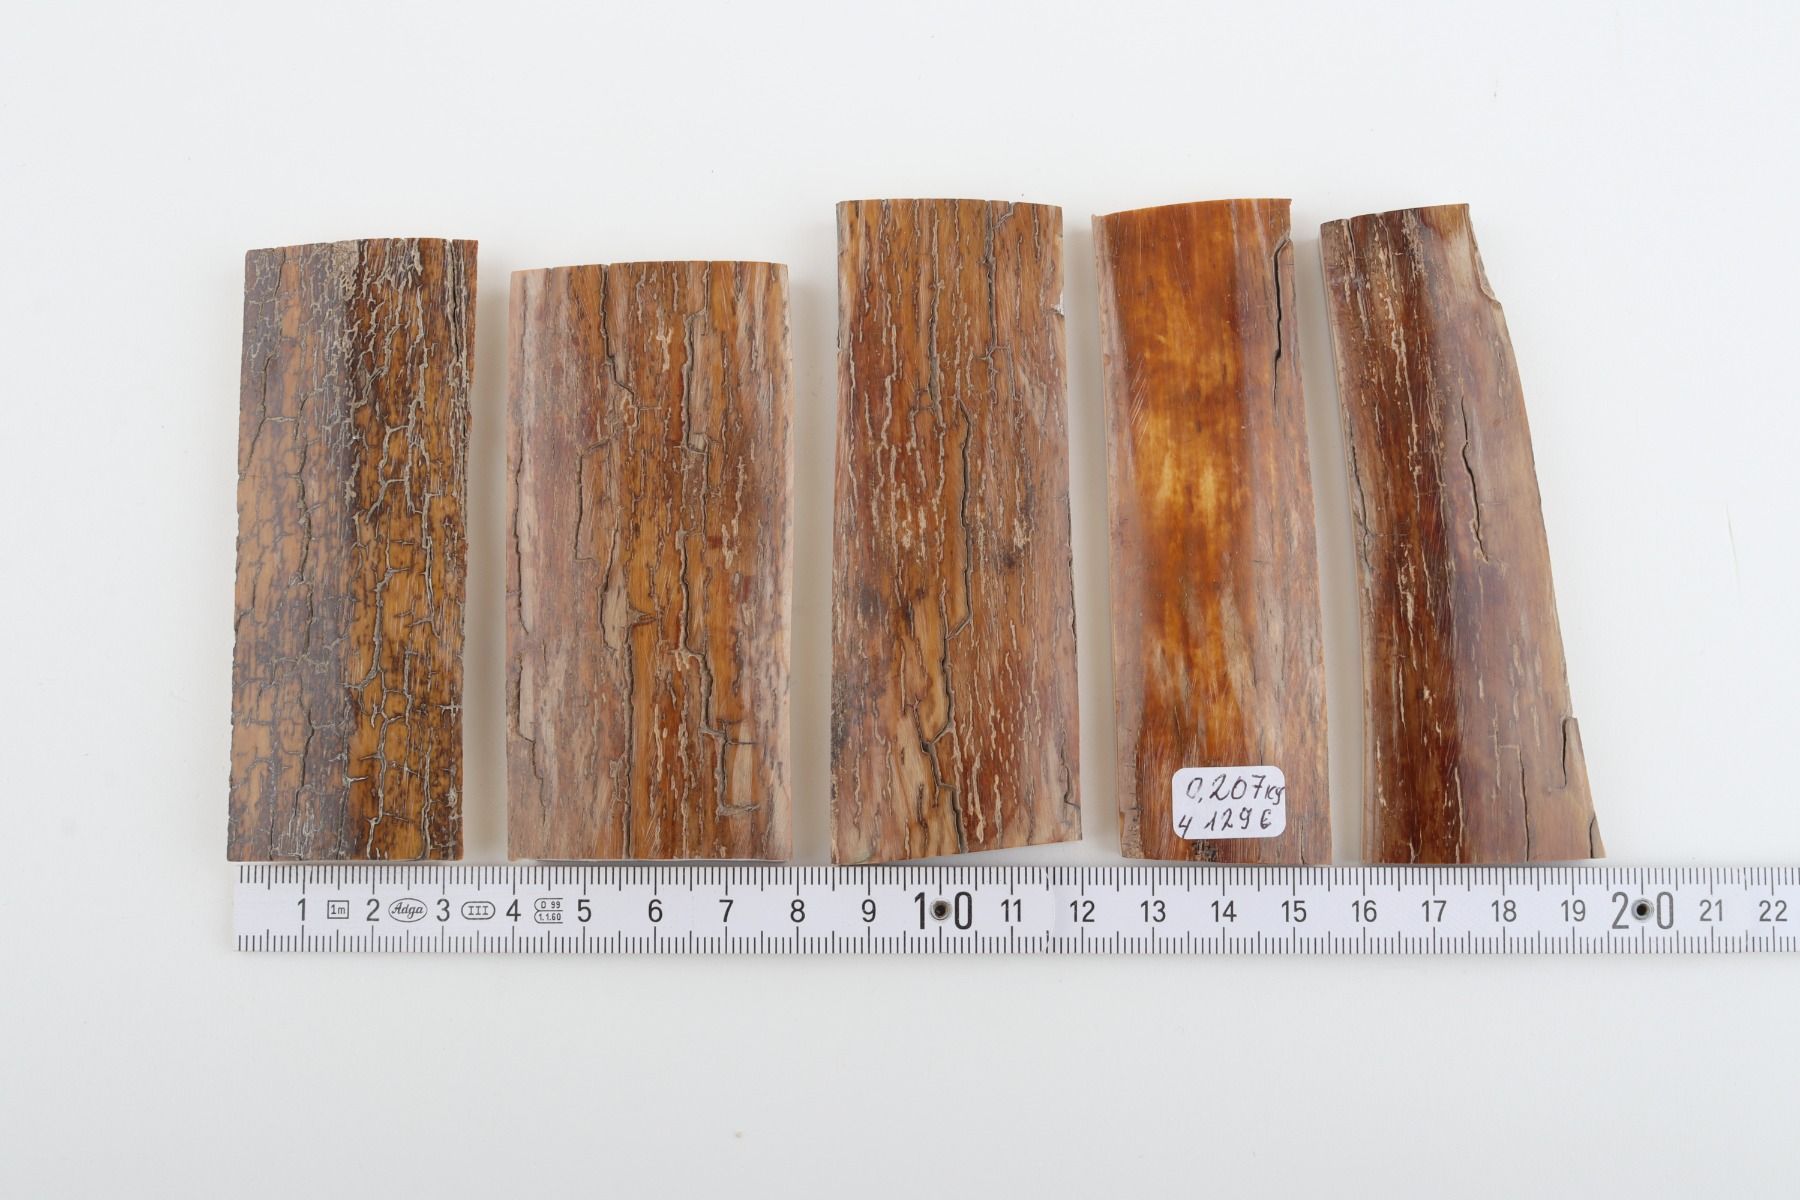 Brown-caramel mammoth bark pieces